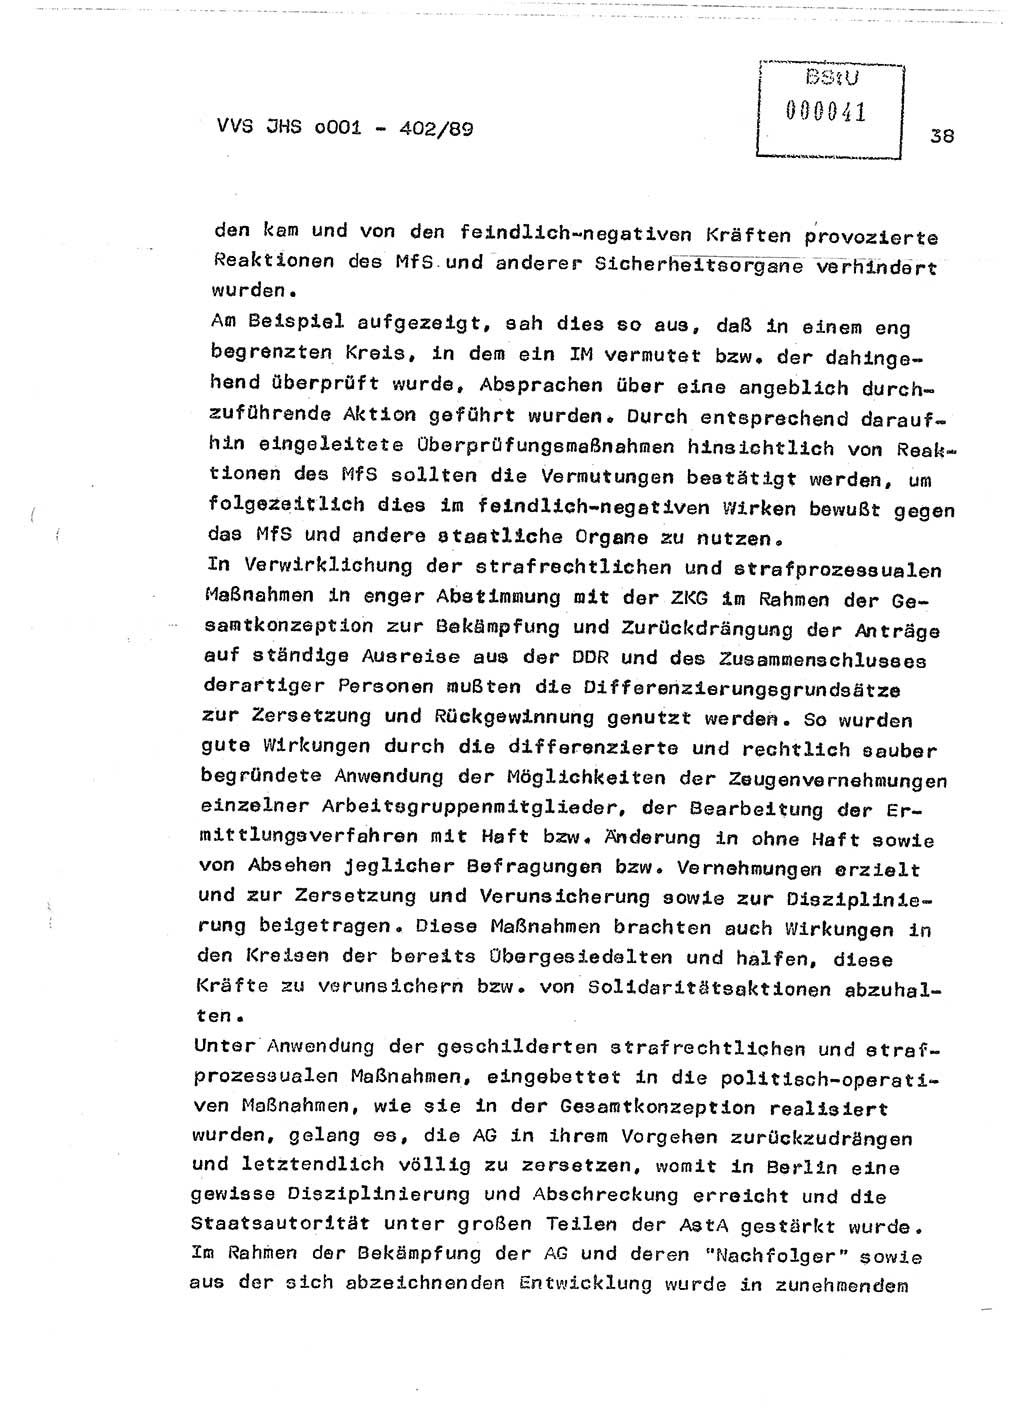 Diplomarbeit Major Günter Müller (HA Ⅸ/9), Ministerium für Staatssicherheit (MfS) [Deutsche Demokratische Republik (DDR)], Juristische Hochschule (JHS), Vertrauliche Verschlußsache (VVS) o001-402/89, Potsdam 1989, Seite 38 (Dipl.-Arb. MfS DDR JHS VVS o001-402/89 1989, S. 38)